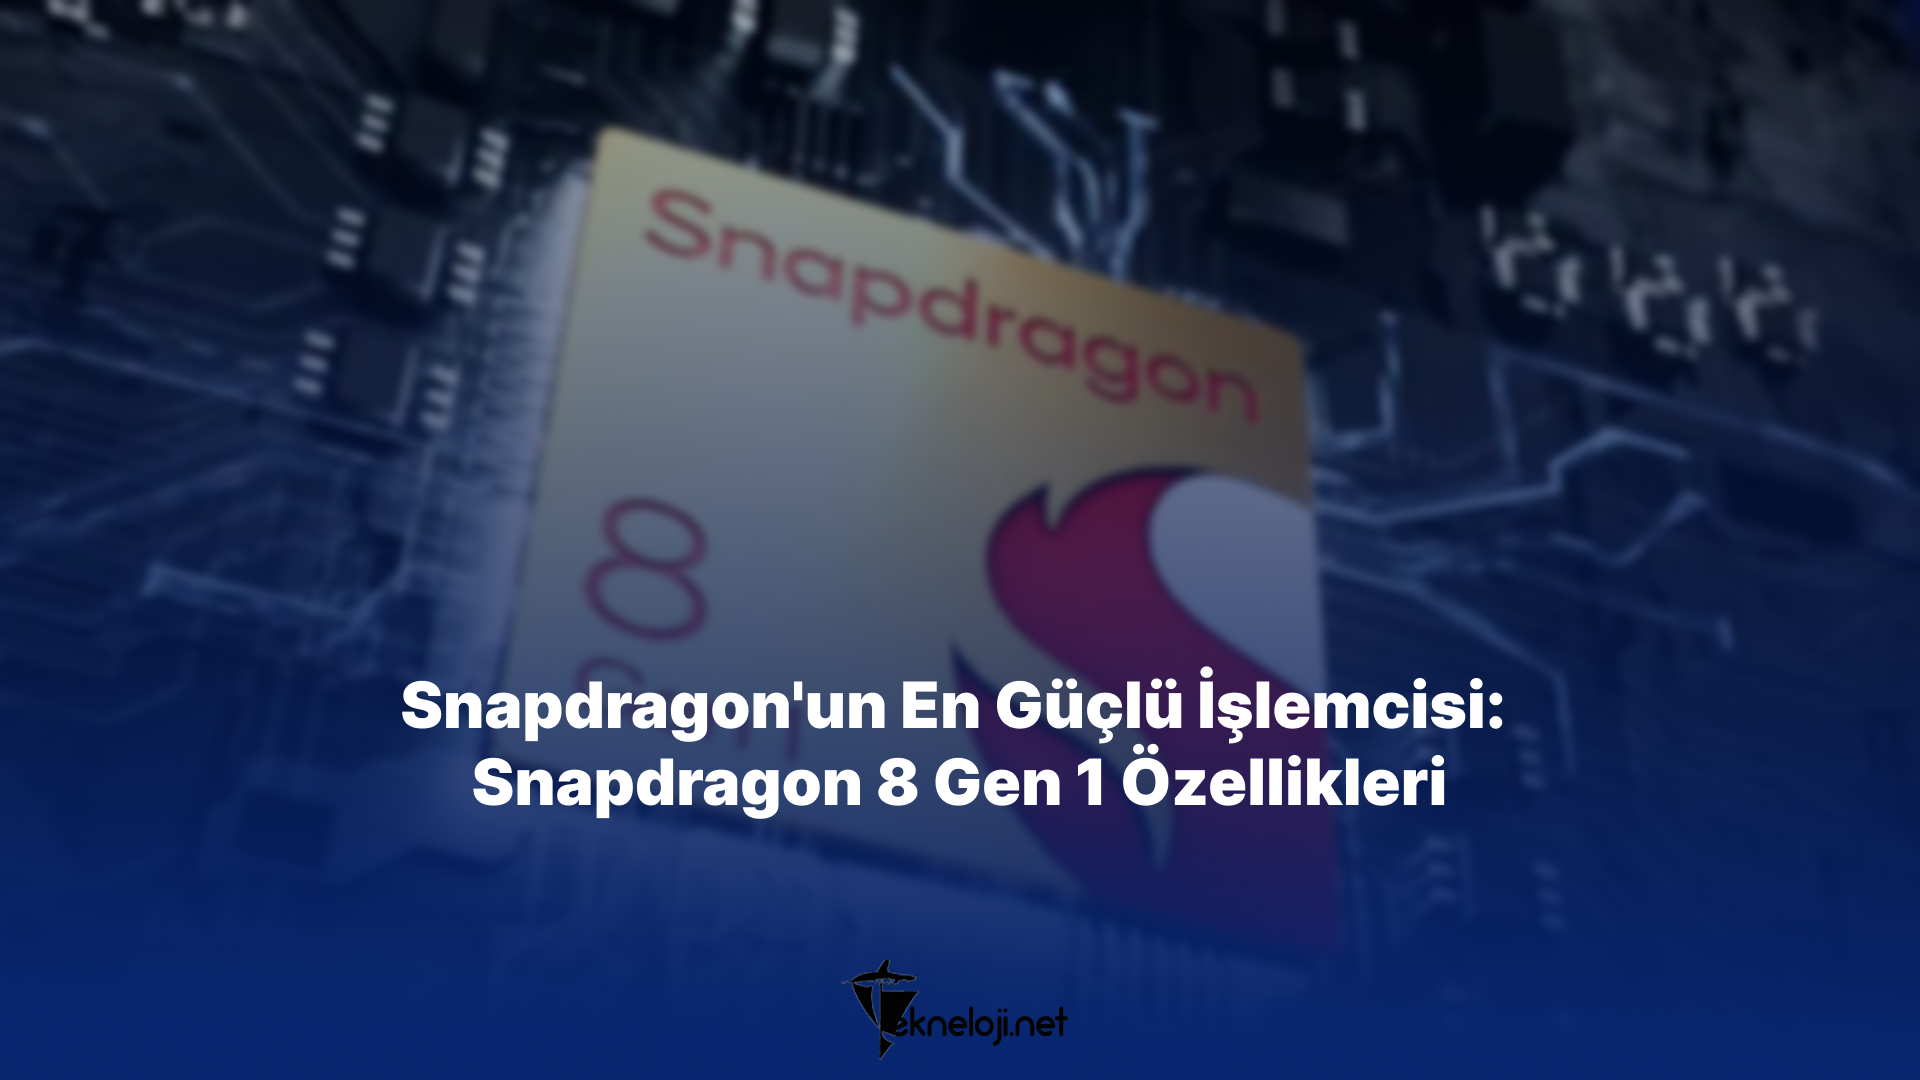 Snapdragon’un En Güçlü İşlemcisi: Snapdragon 8 Gen 1 Özellikleri